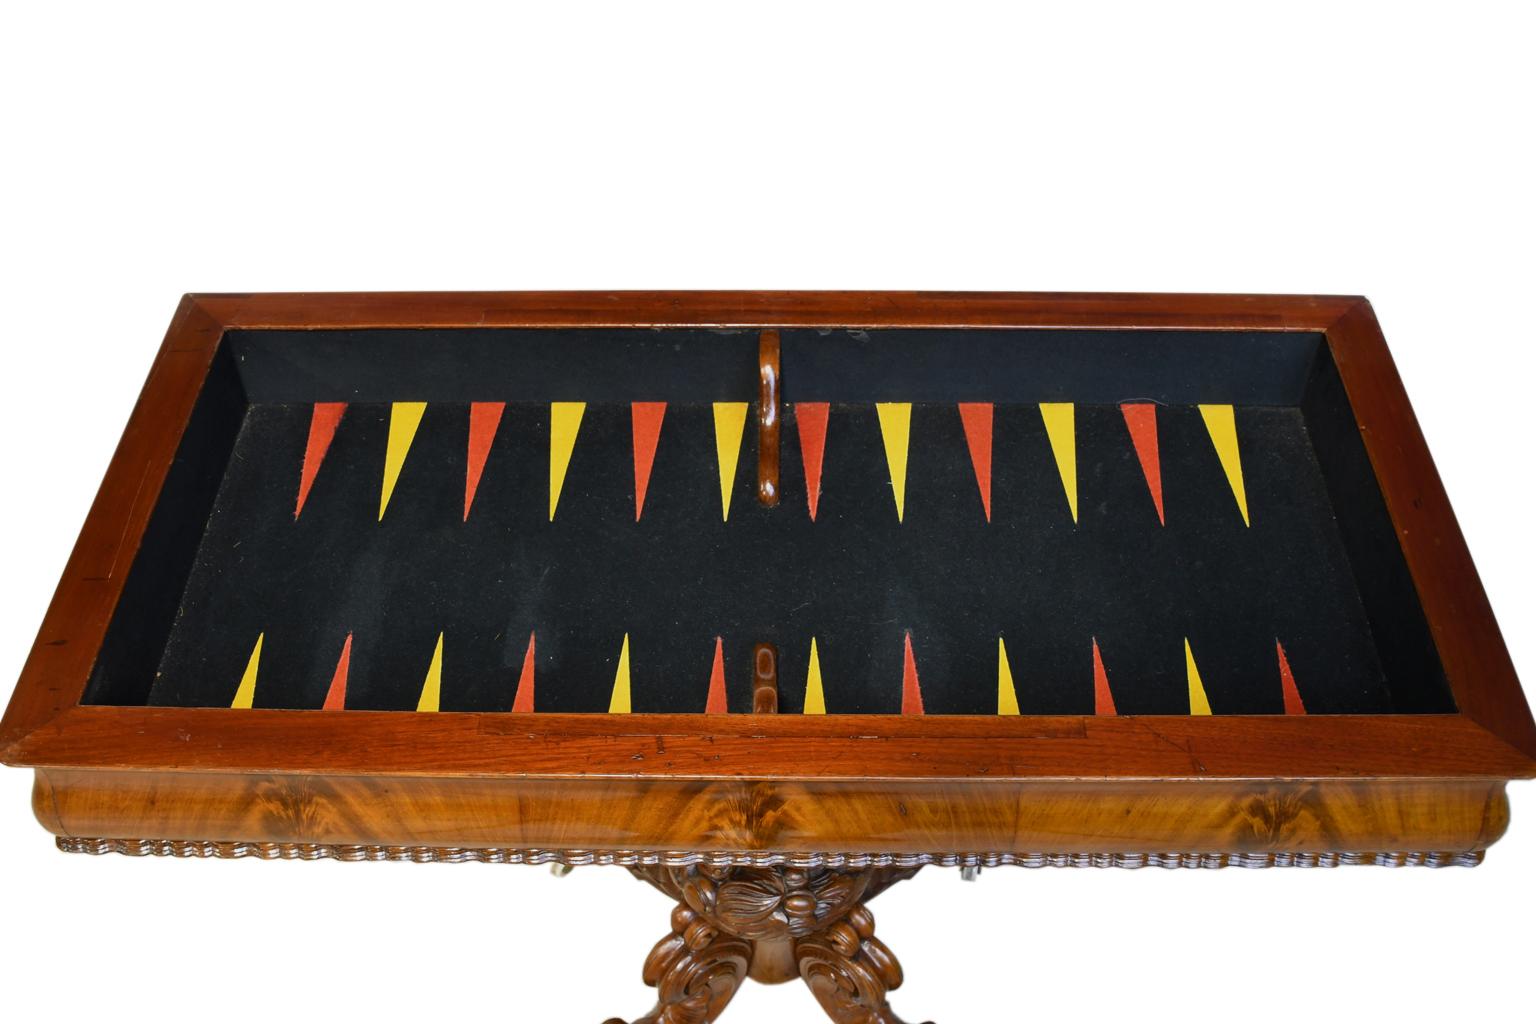 Table de jeu rococo en acajou cubain avec socle magnifiquement articulé, surface de jeu intérieure en feutre pour le backgammon et deux surfaces rondes extractibles / extractibles pour les boissons. Le couvercle se soulève et s'ouvre pour former un